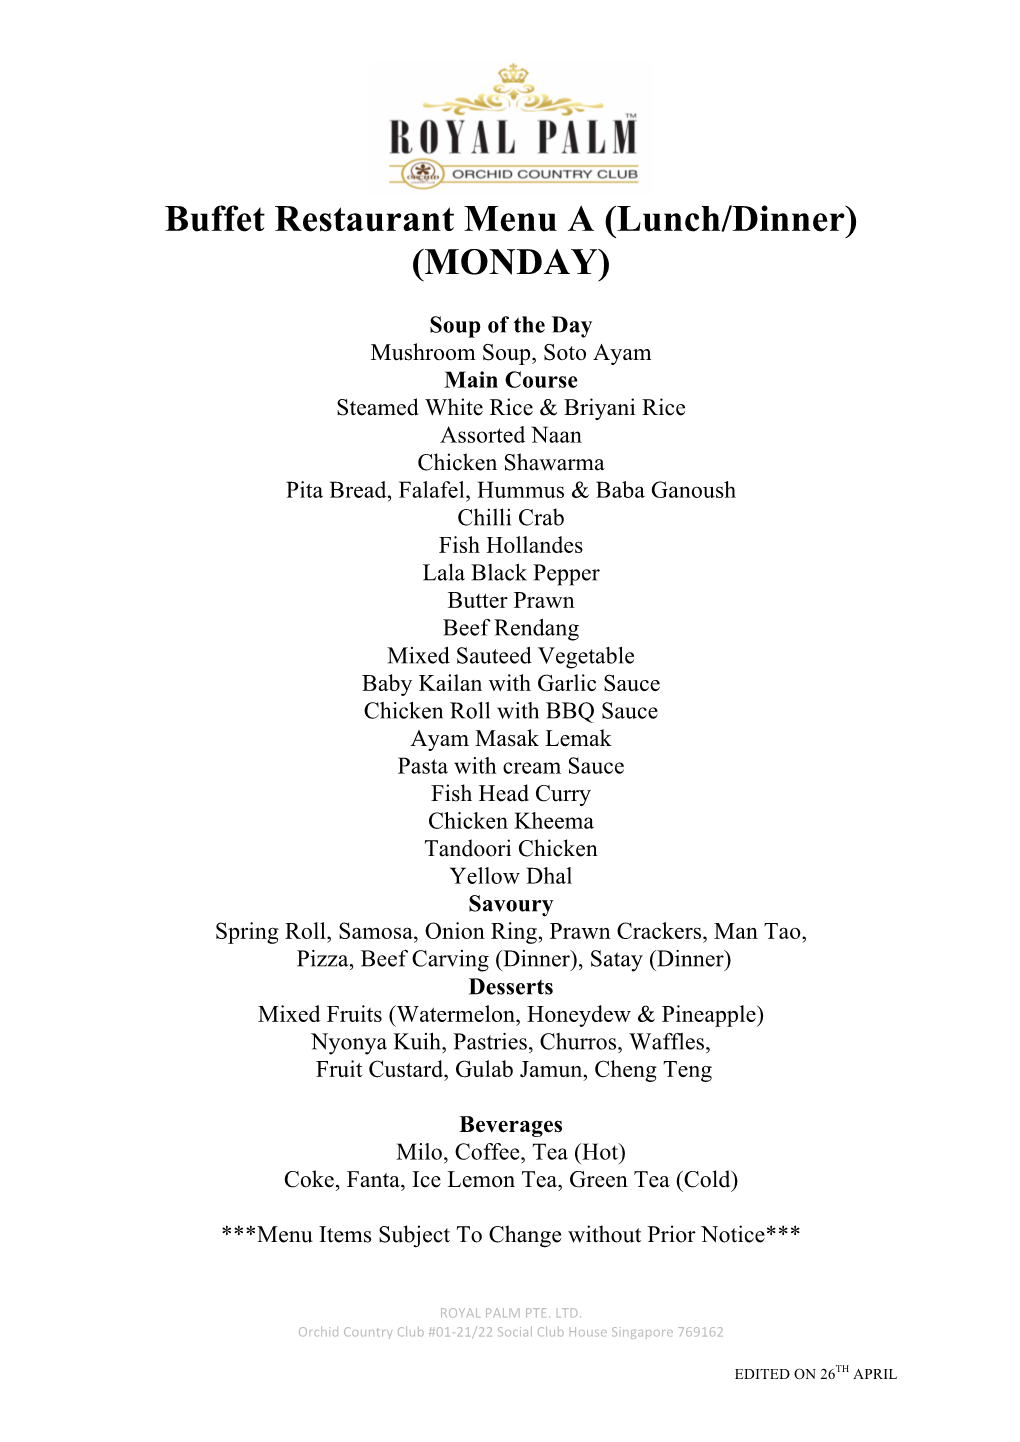 Buffet Restaurant Menu a (Lunch/Dinner) (MONDAY)